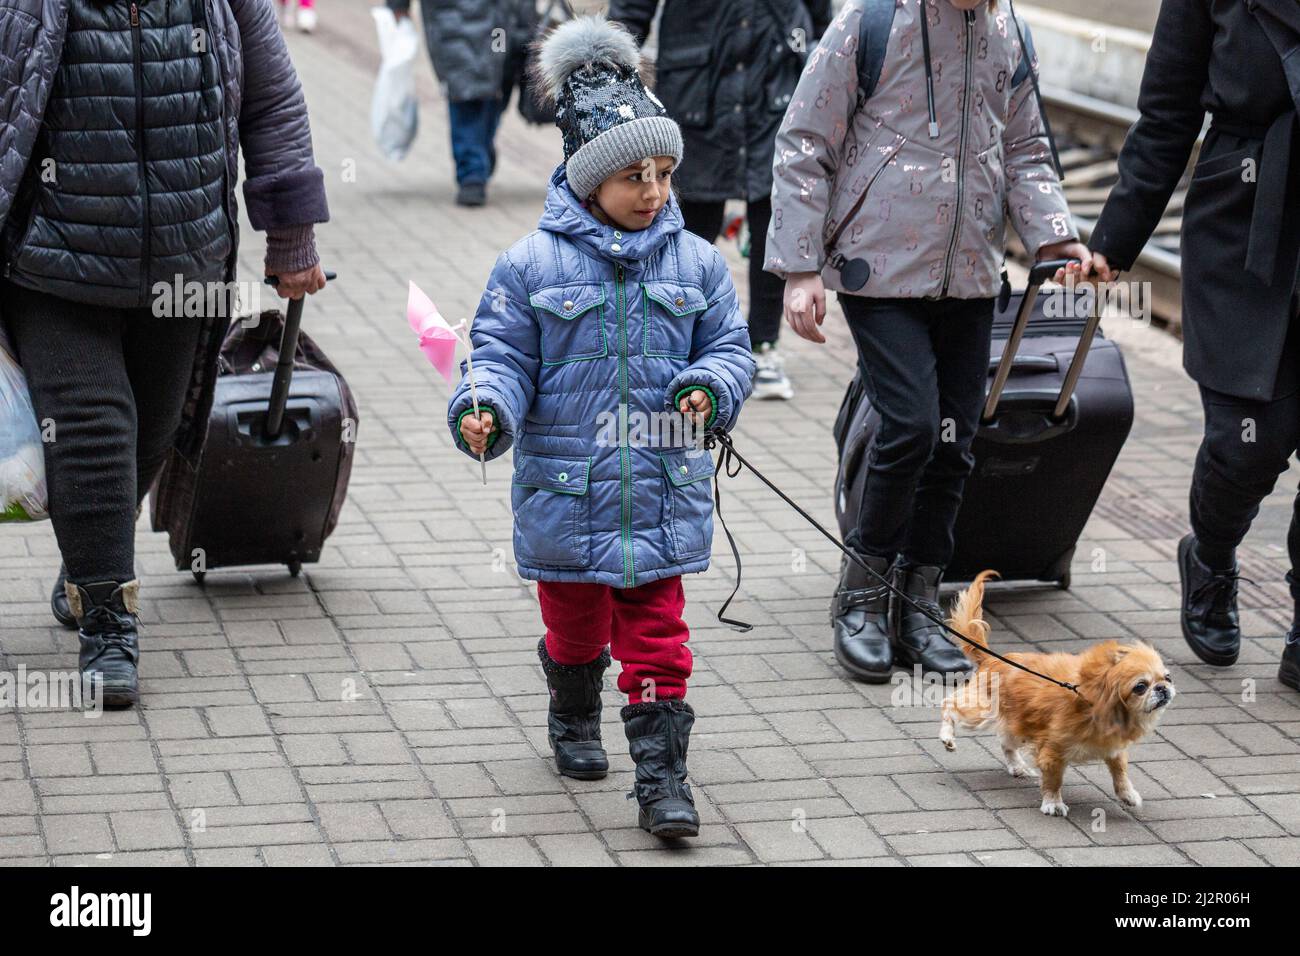 LVIV, UCRANIA - 02 DE ABRIL de 2022: Catástrofe humanitaria durante la guerra en Ucrania. Los refugiados con un perro pequeño de Mariupol son fugaces a Europa en este momento Foto de stock